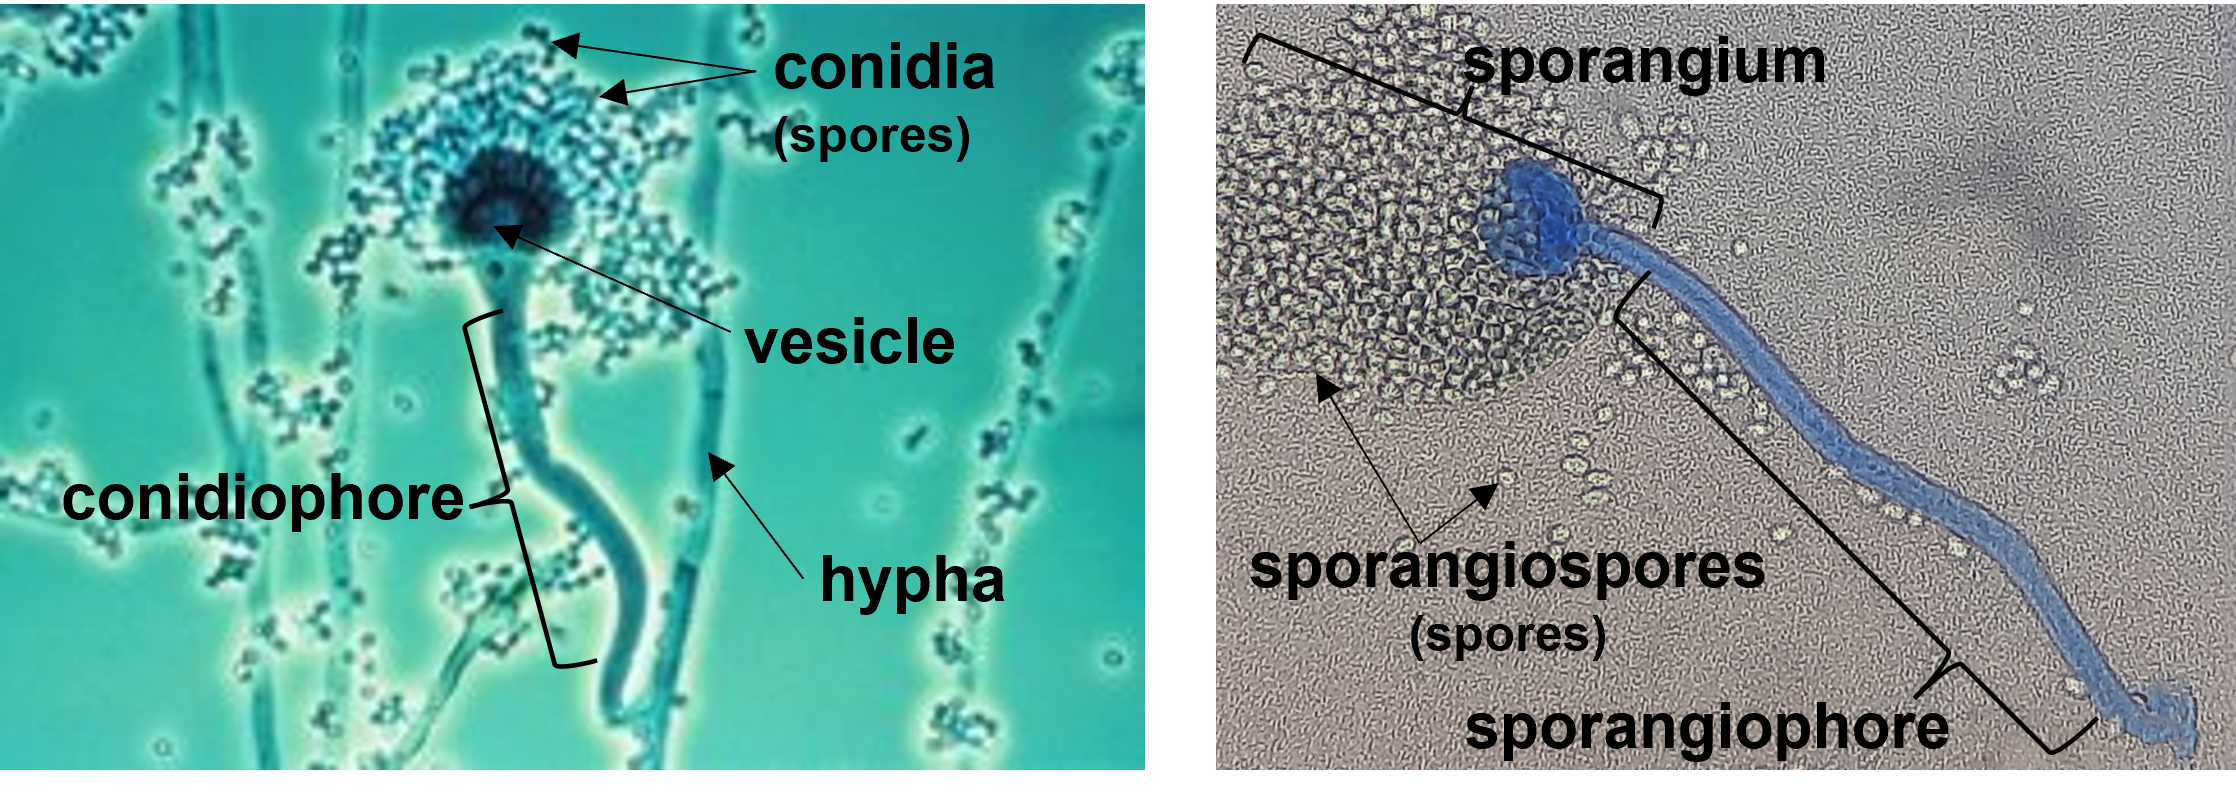 spore-producing structures in some fungal species: conidia and sporangiospores